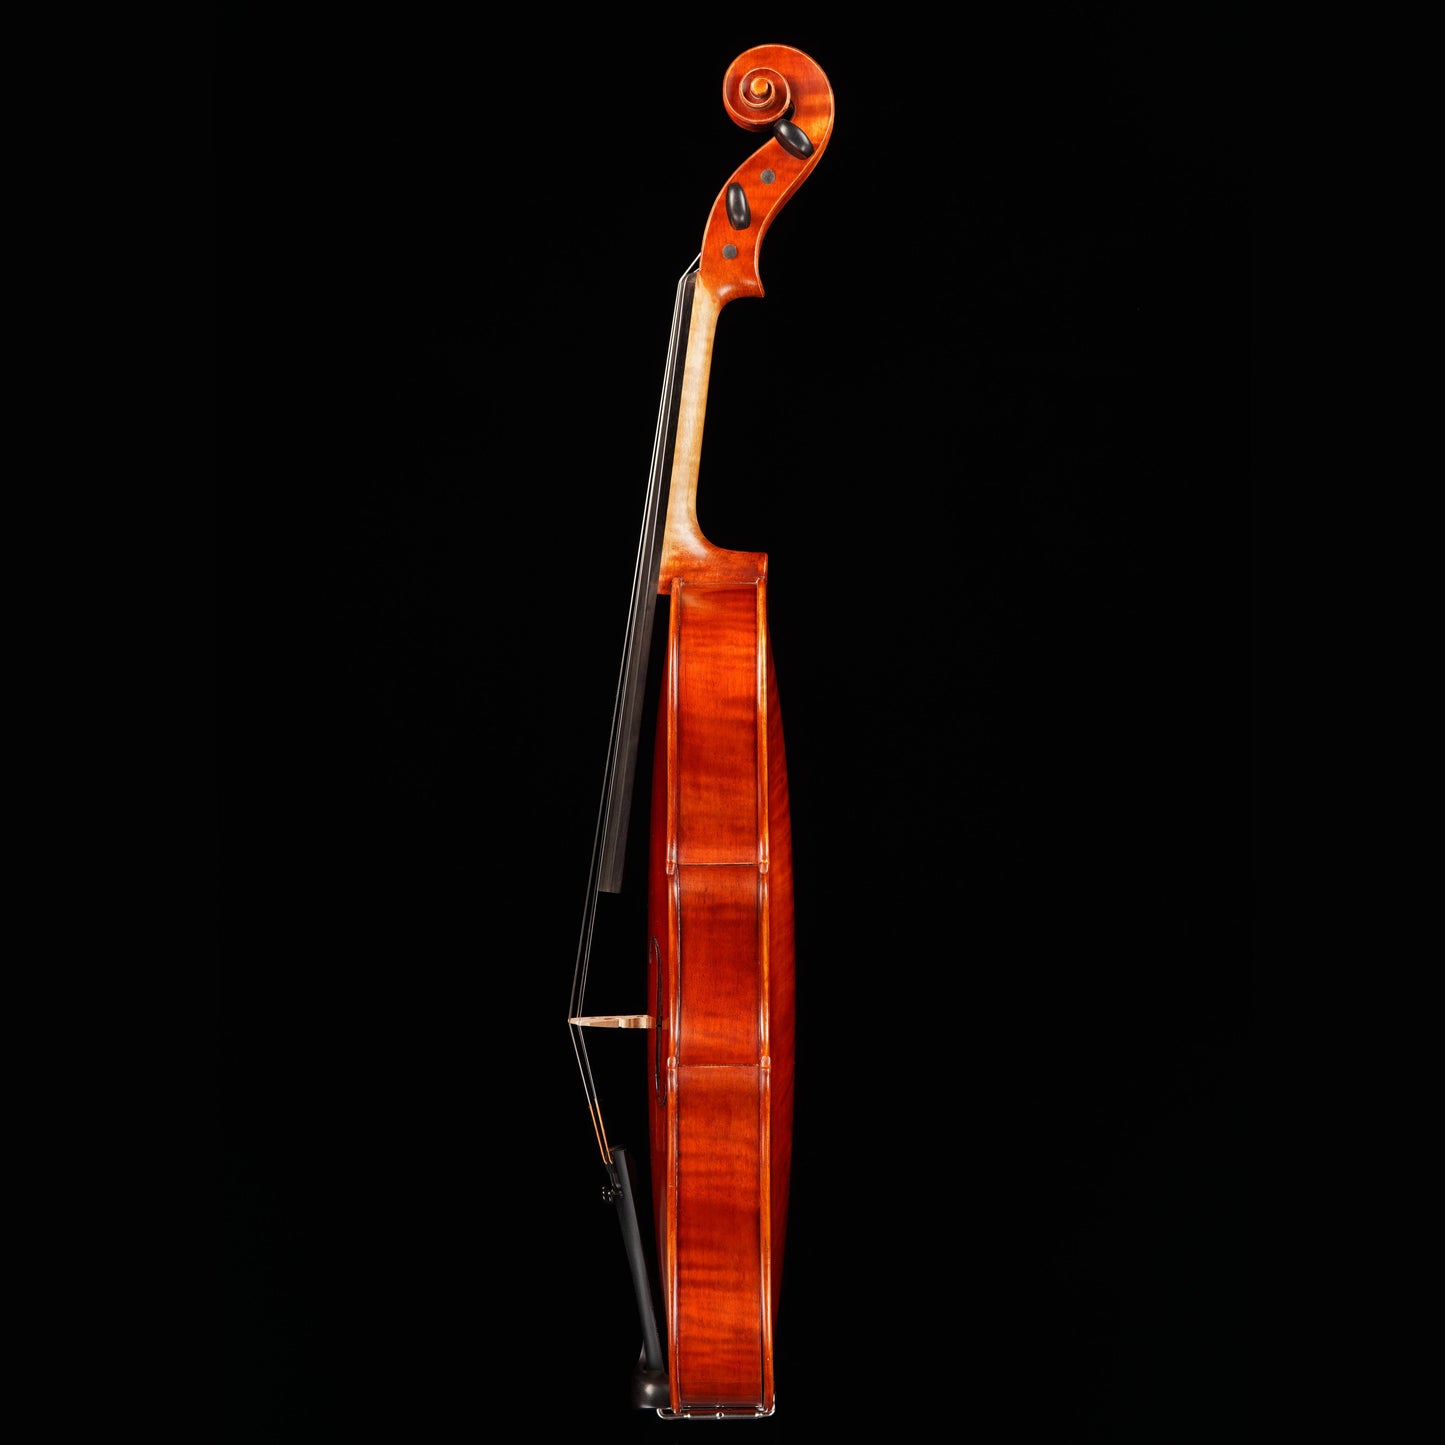 Antonio Scarlatti AS-202 "Concertmaster" Viola